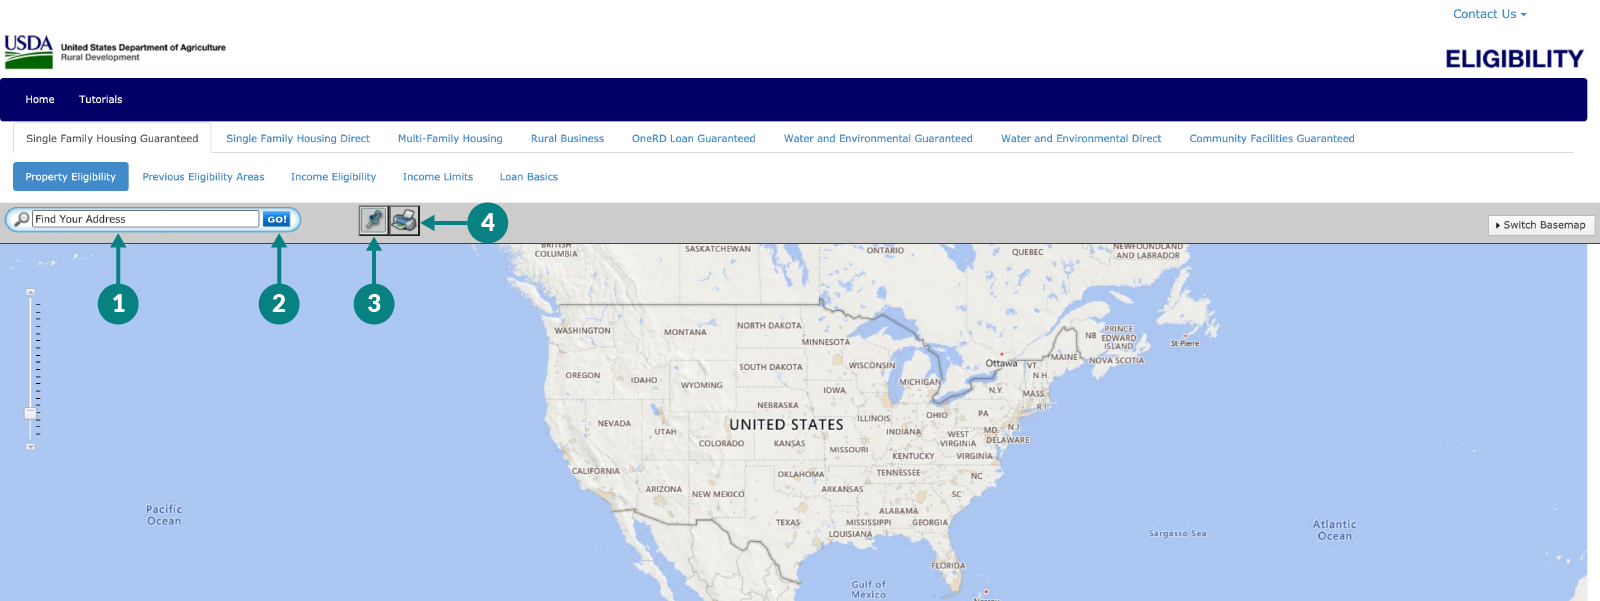 USDA eligibility map